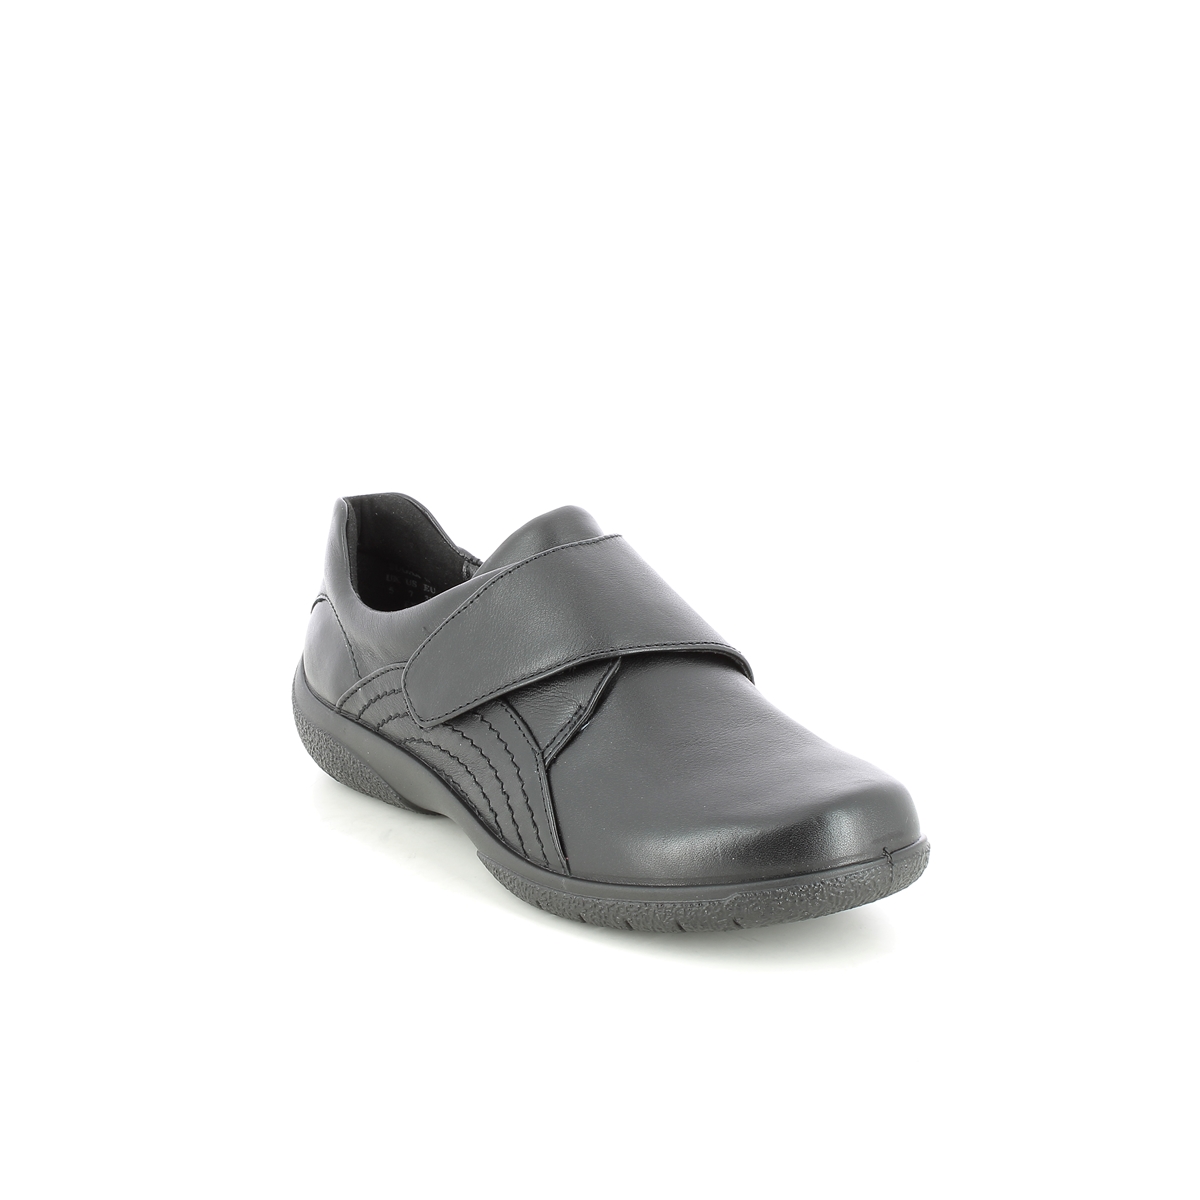 Hotter Sugar 2 Wide 9511-30 Black leather Comfort Slip On Shoes